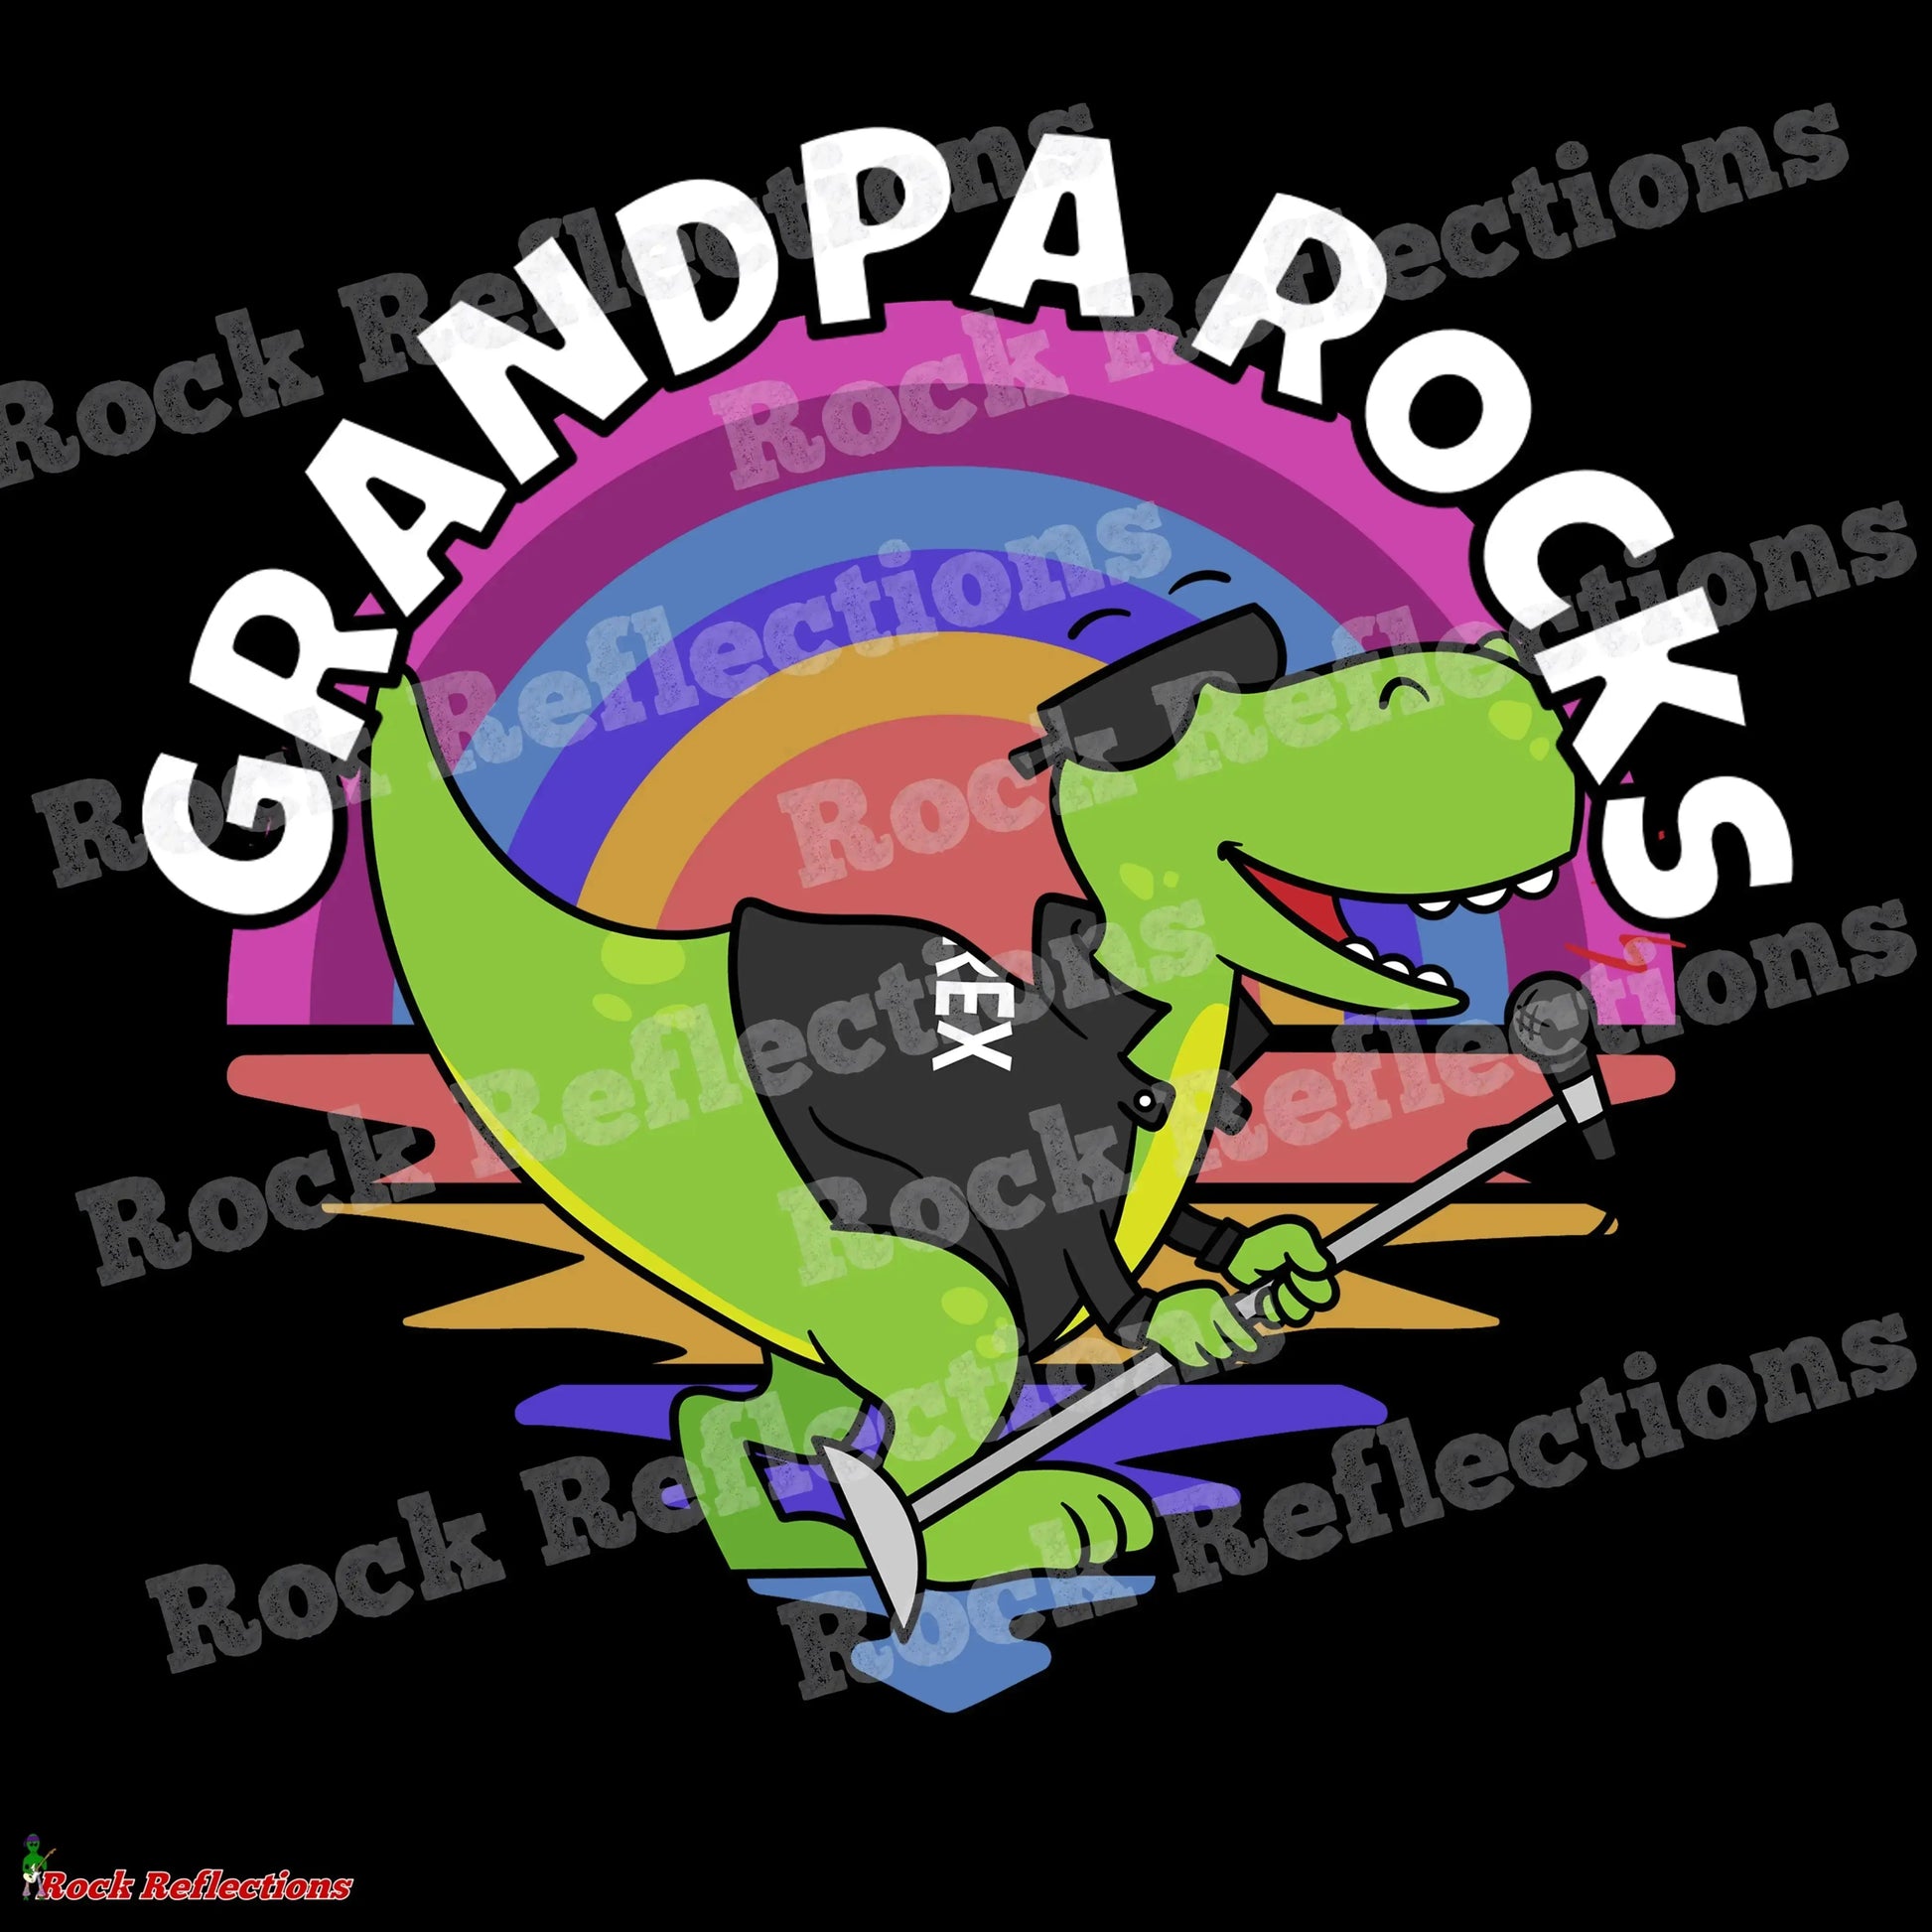 Grandpa Rocks T-Rex SPOD